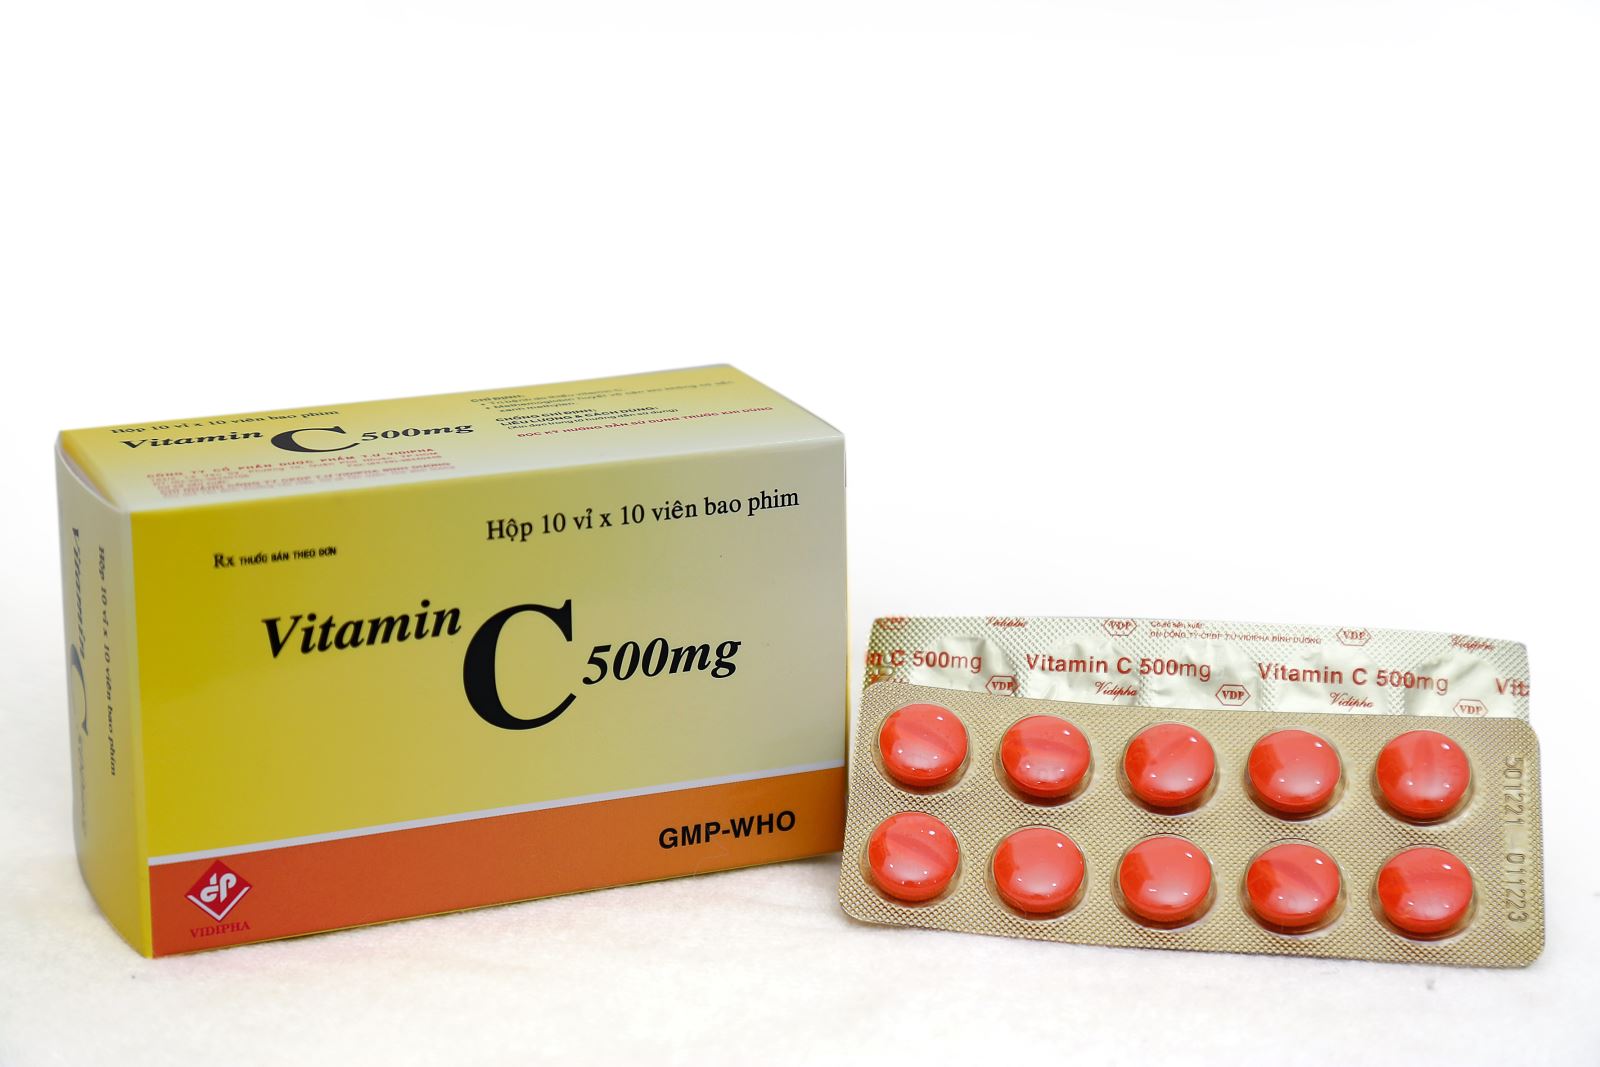 Thuốc Vitamin C Vidipha có dạng viên nang hay dạng gì?
